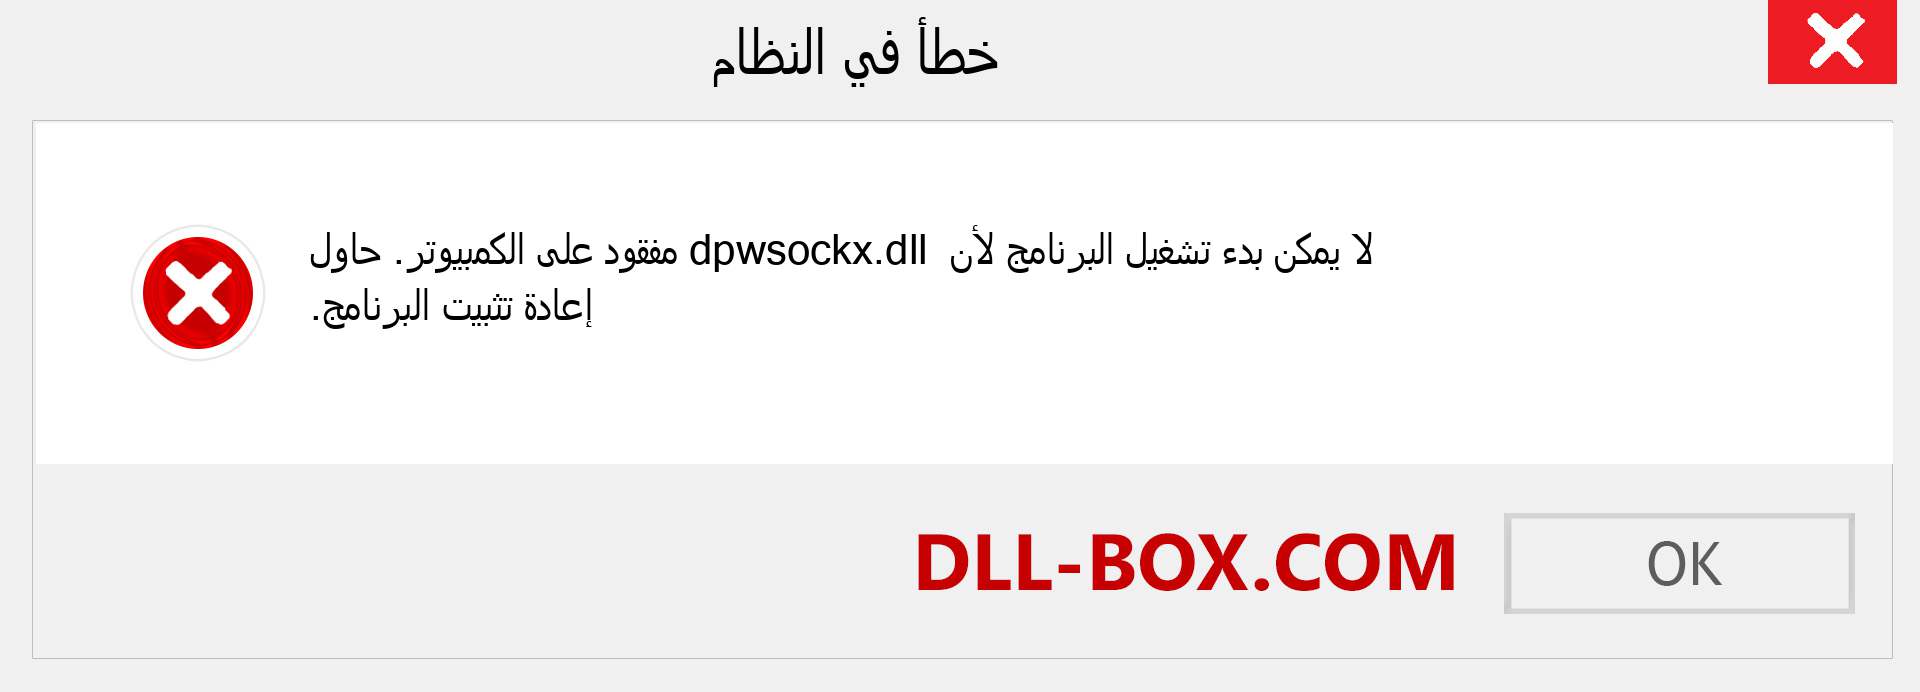 ملف dpwsockx.dll مفقود ؟. التنزيل لنظام التشغيل Windows 7 و 8 و 10 - إصلاح خطأ dpwsockx dll المفقود على Windows والصور والصور